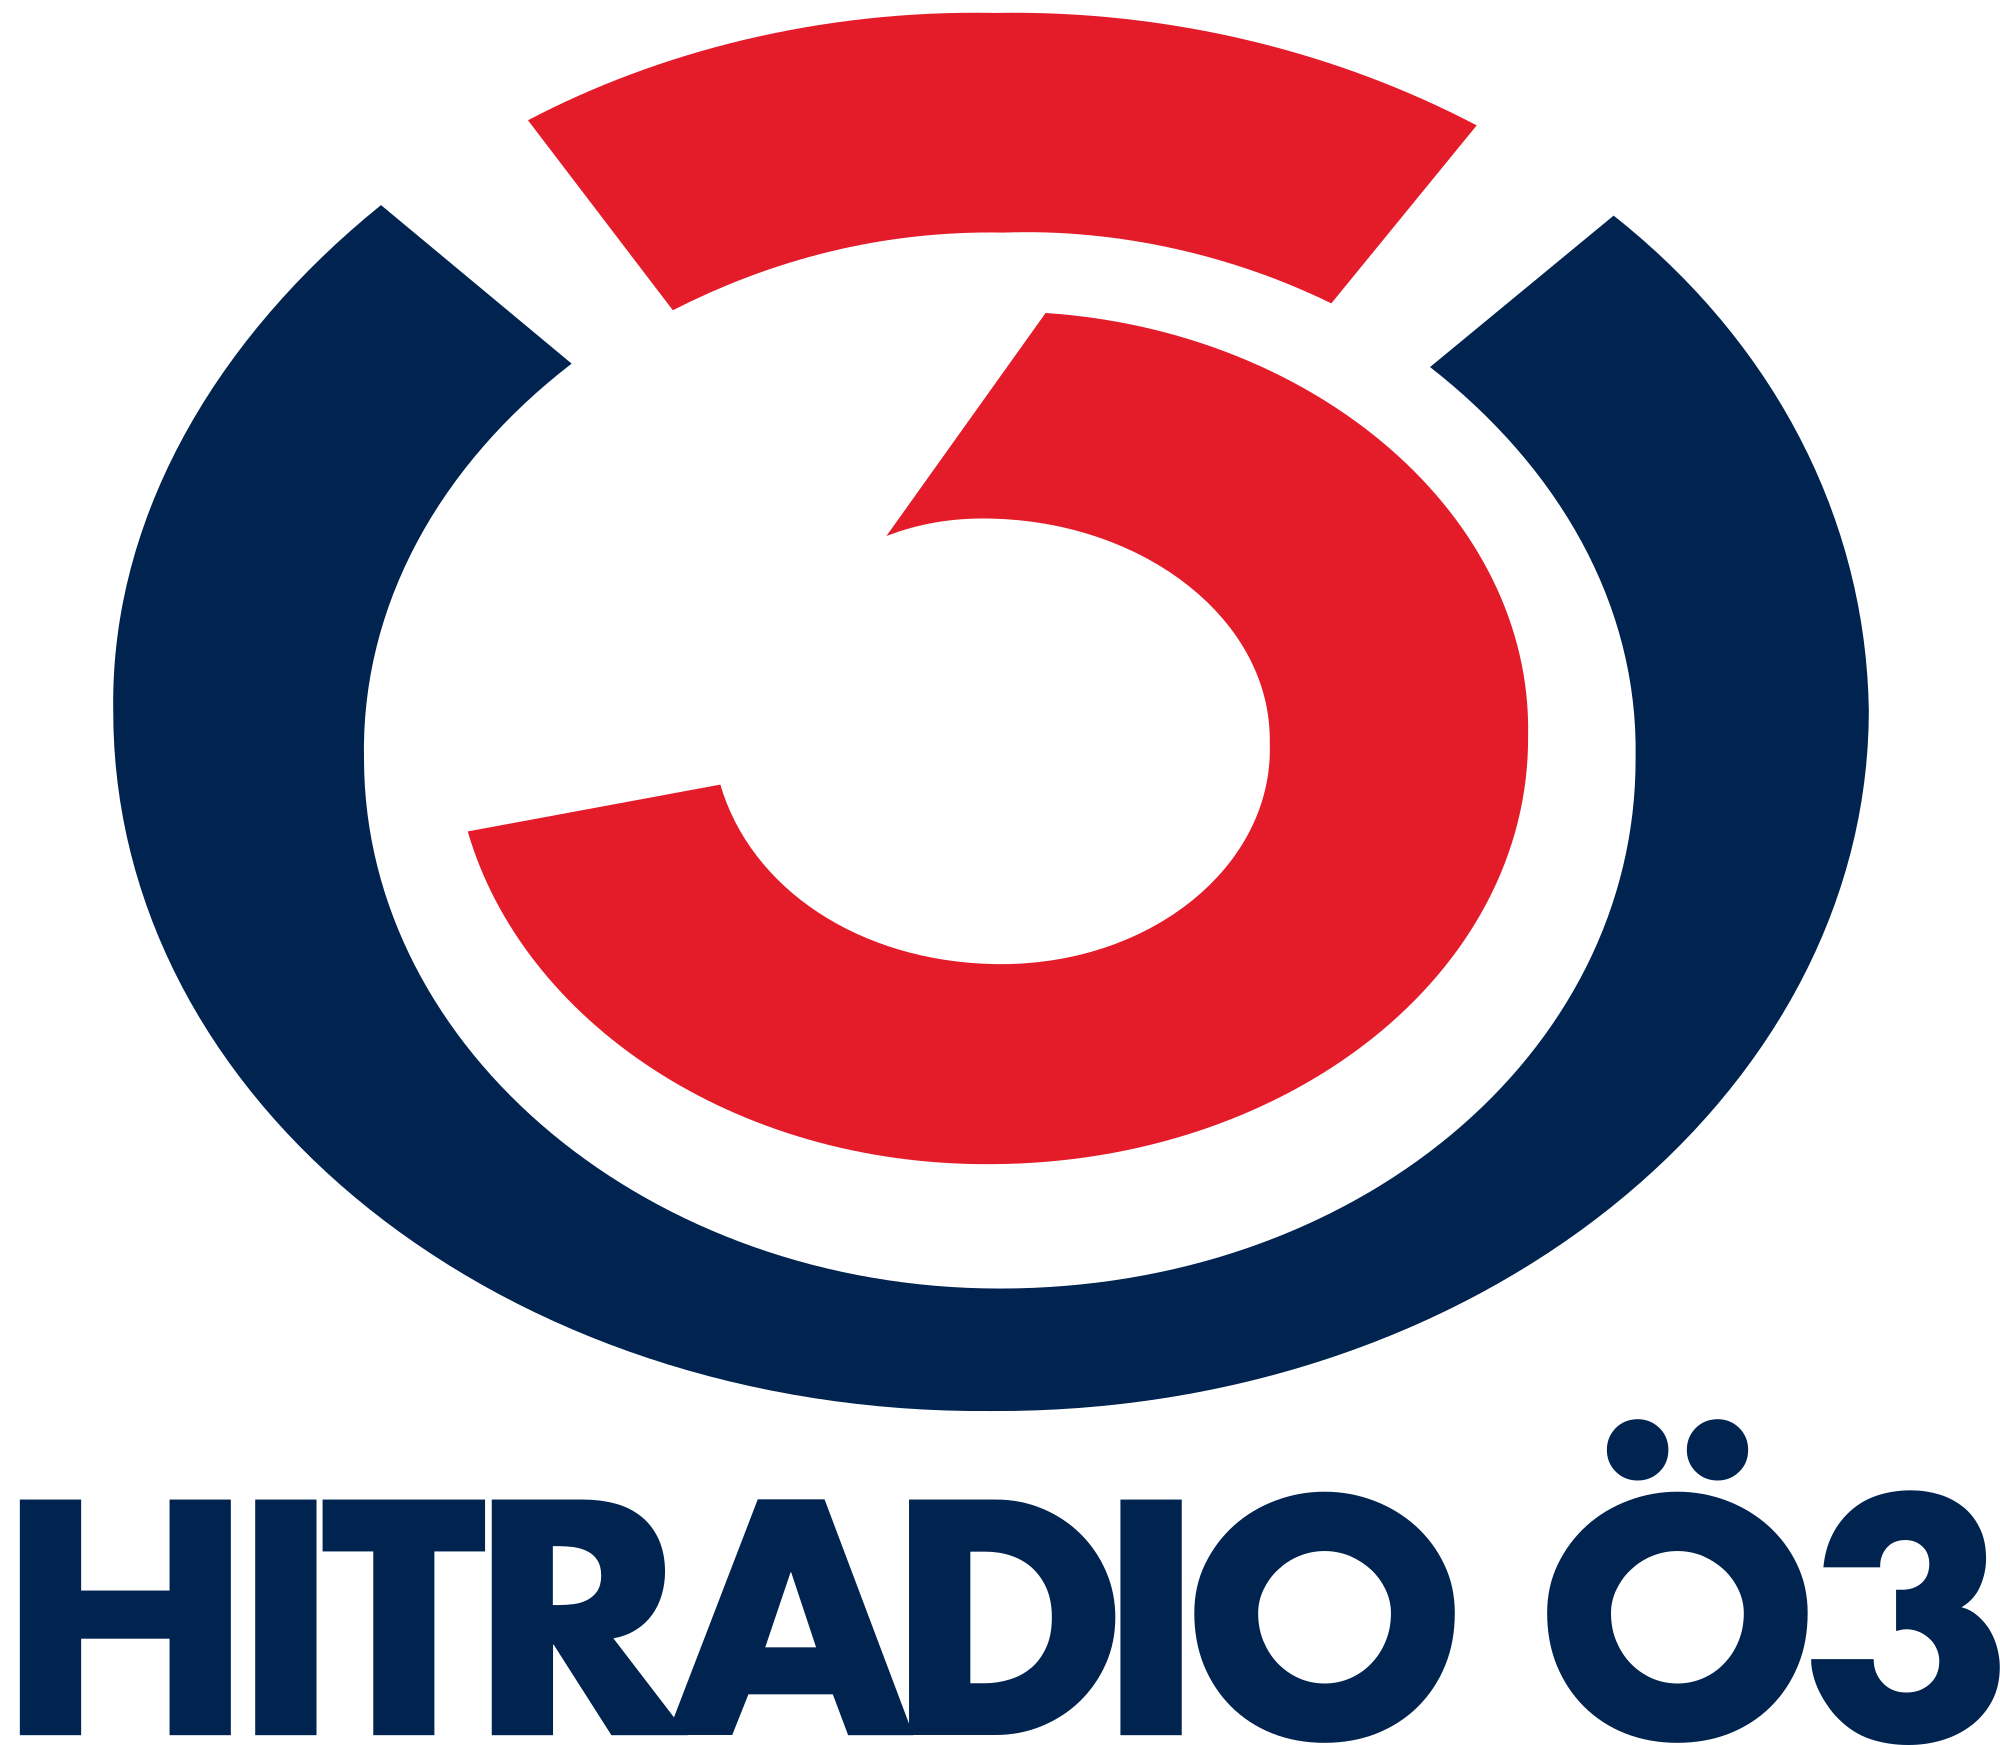 HitradioÖ3_Logo